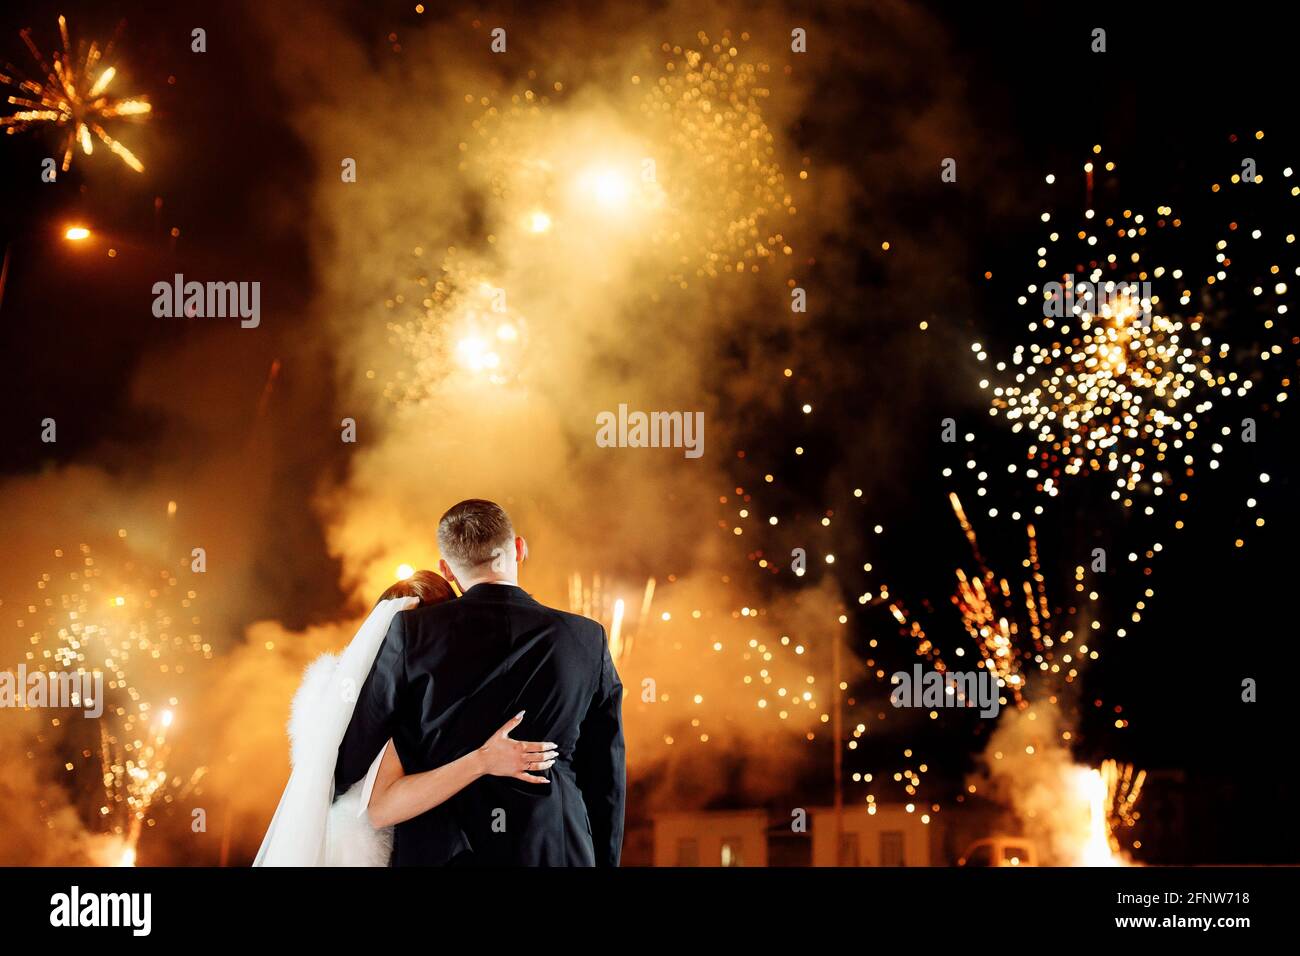 Image libre: la mariée, feux d'artifice, jeune marié, tout juste marié,  nuit, plage, gens, Festival, mariage, amour